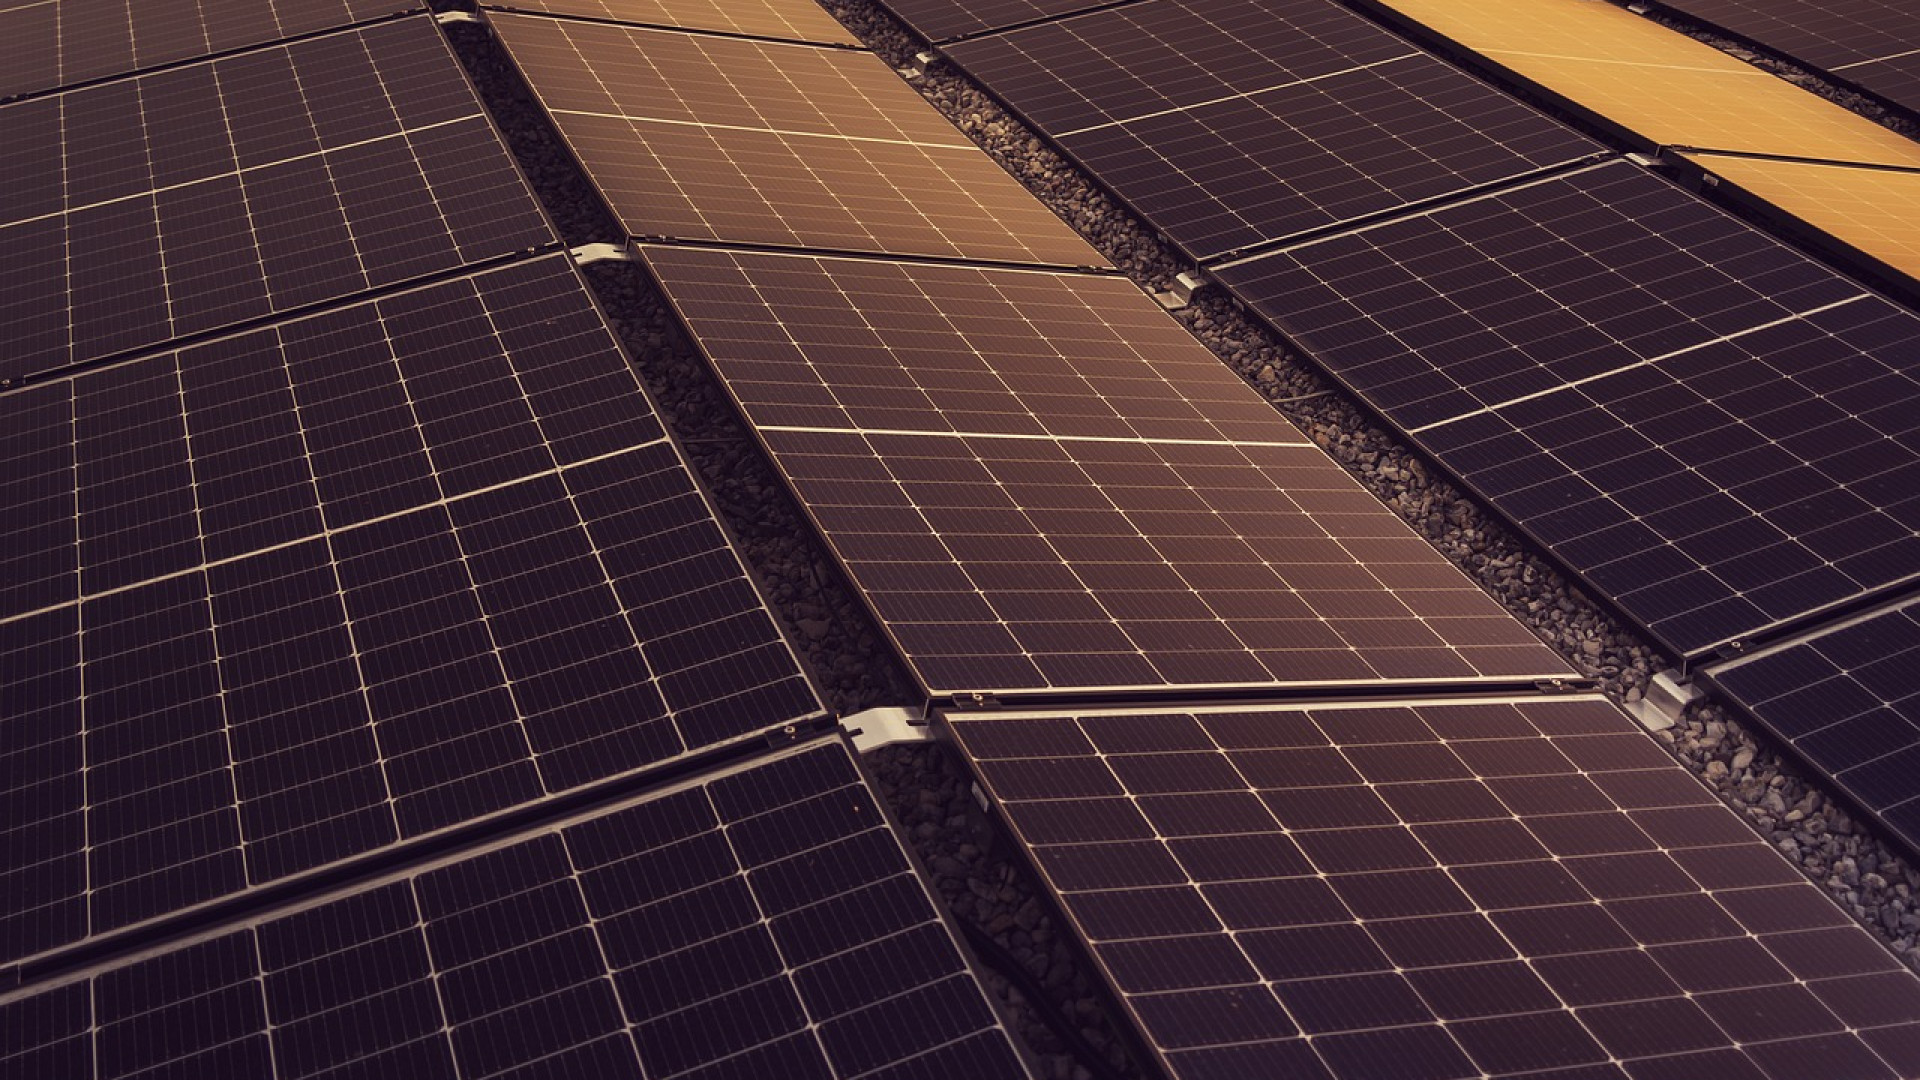 Quels sont les critères à prendre en compte lors du choix d'un fournisseur de solutions solaires ?